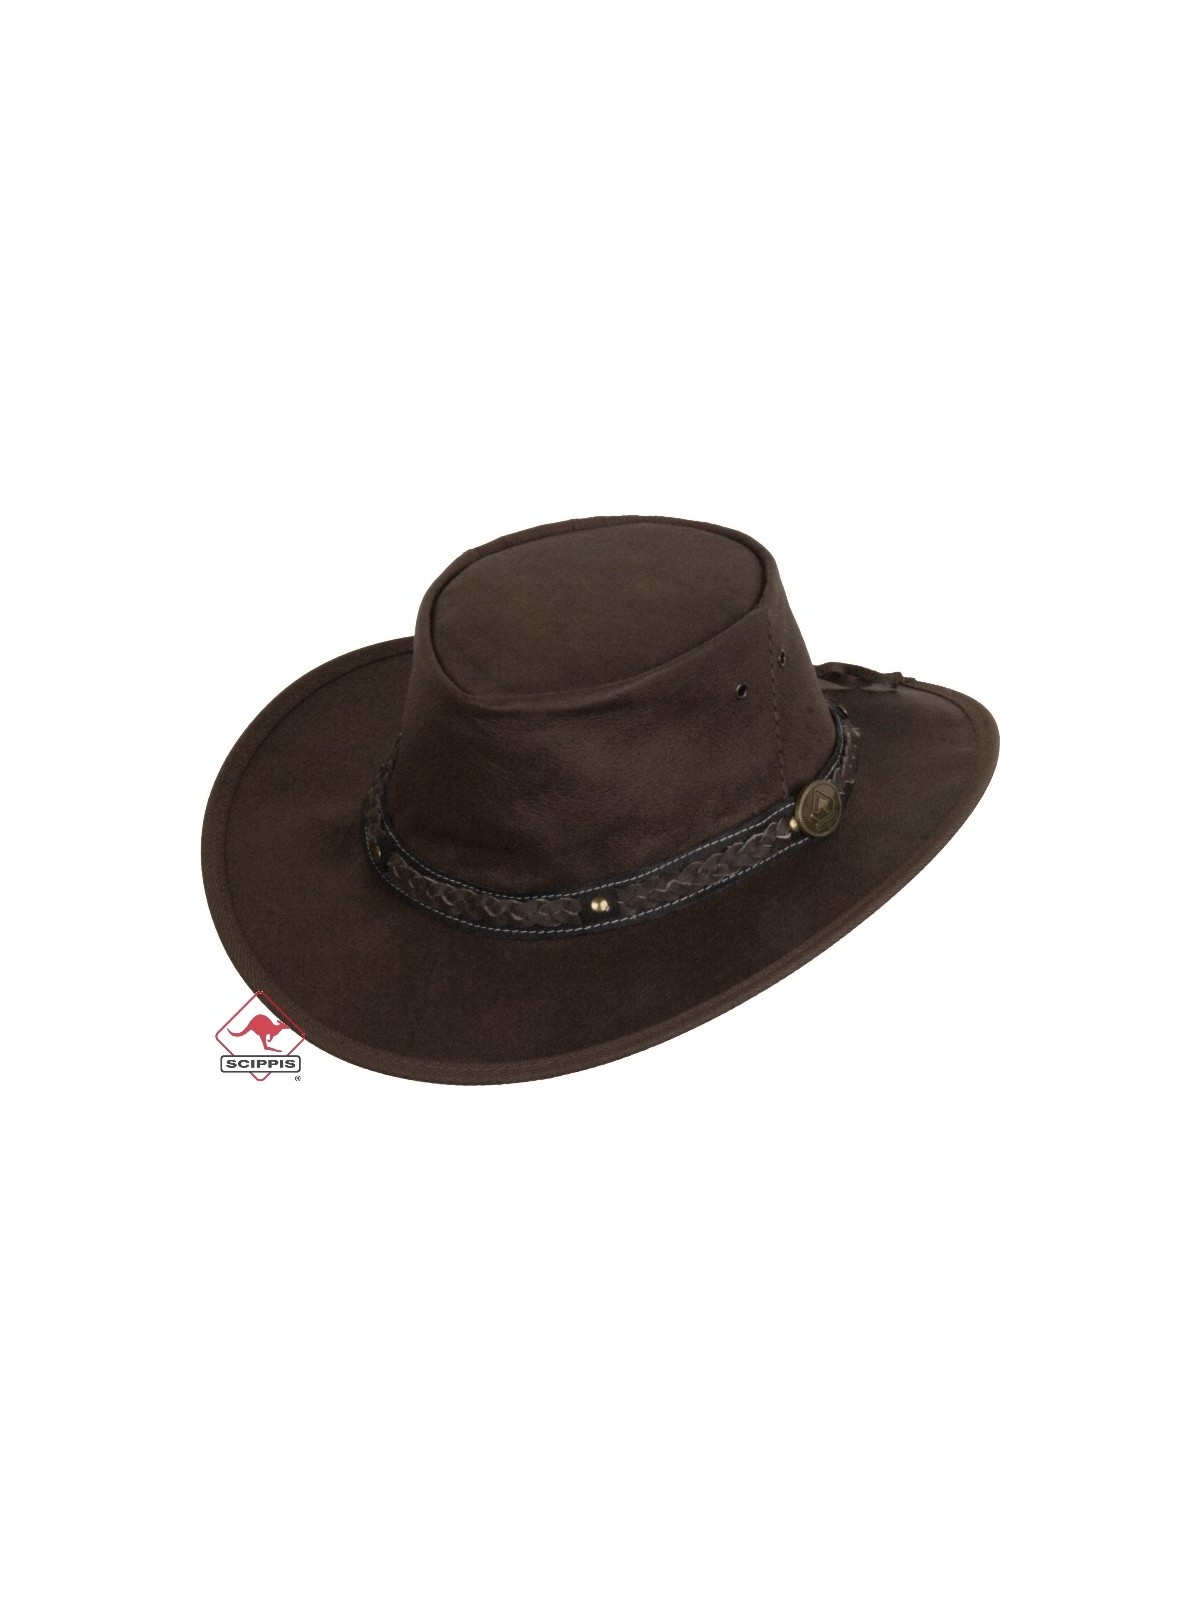 Kangaroo Leather Hat Roo Walkabout